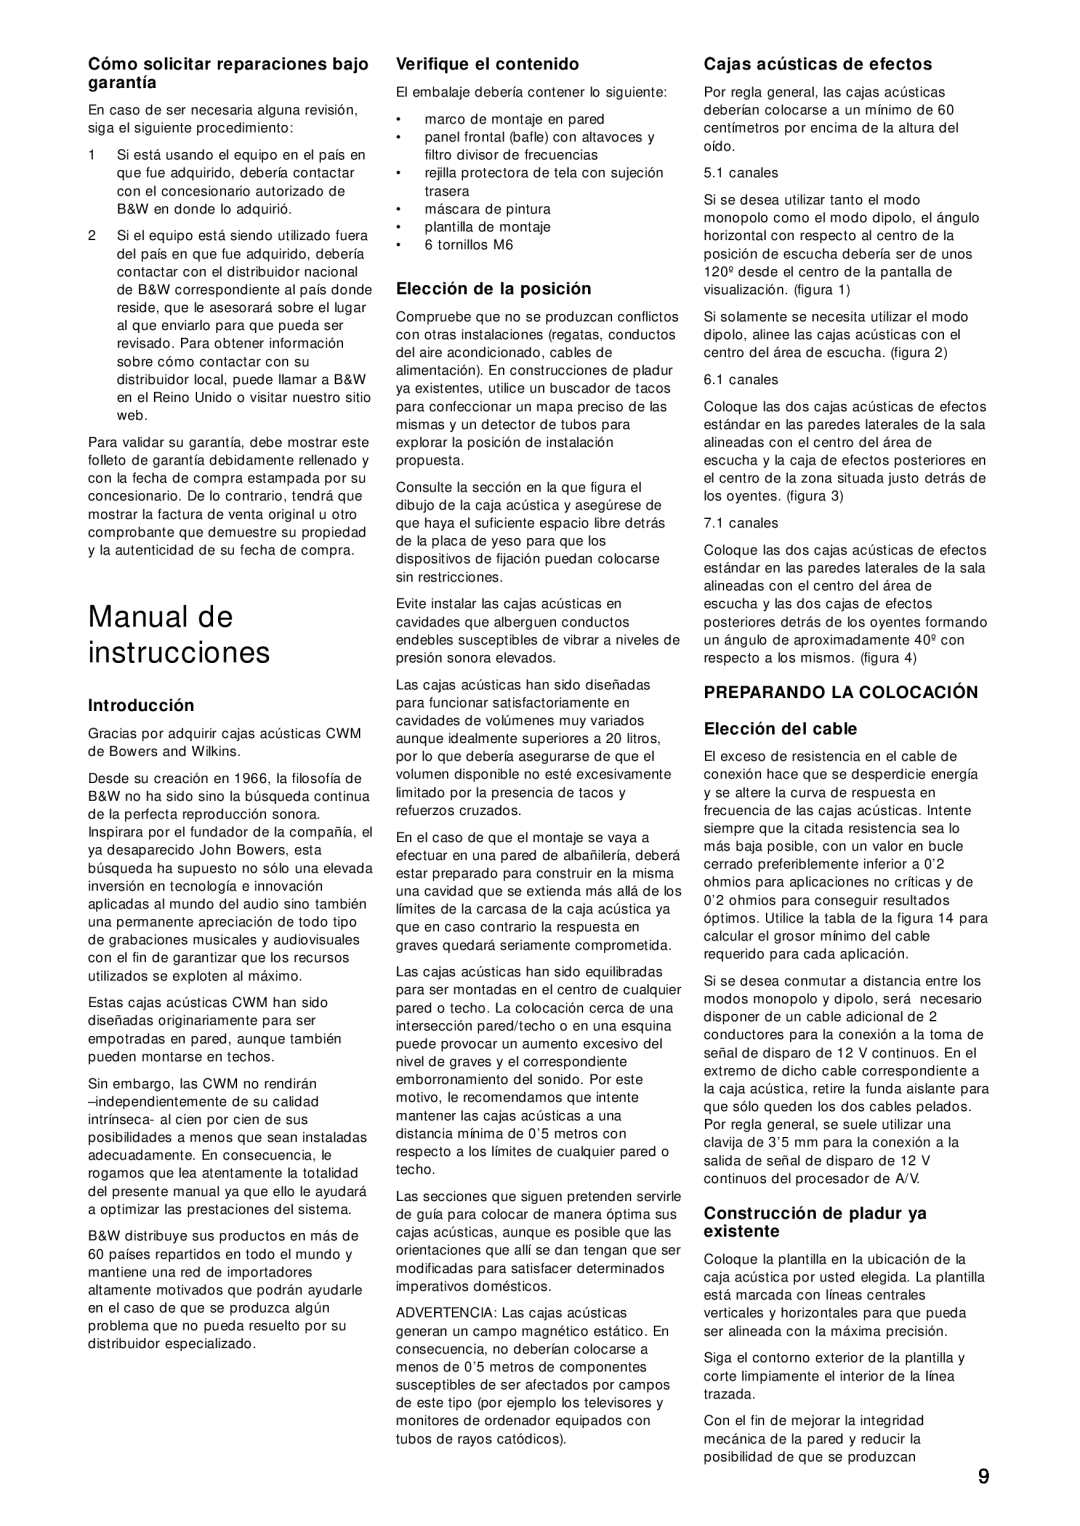 Bowers & Wilkins CWM DS8 owner manual Manual de instrucciones, Cómo solicitar reparaciones bajo garantía, Introducción 